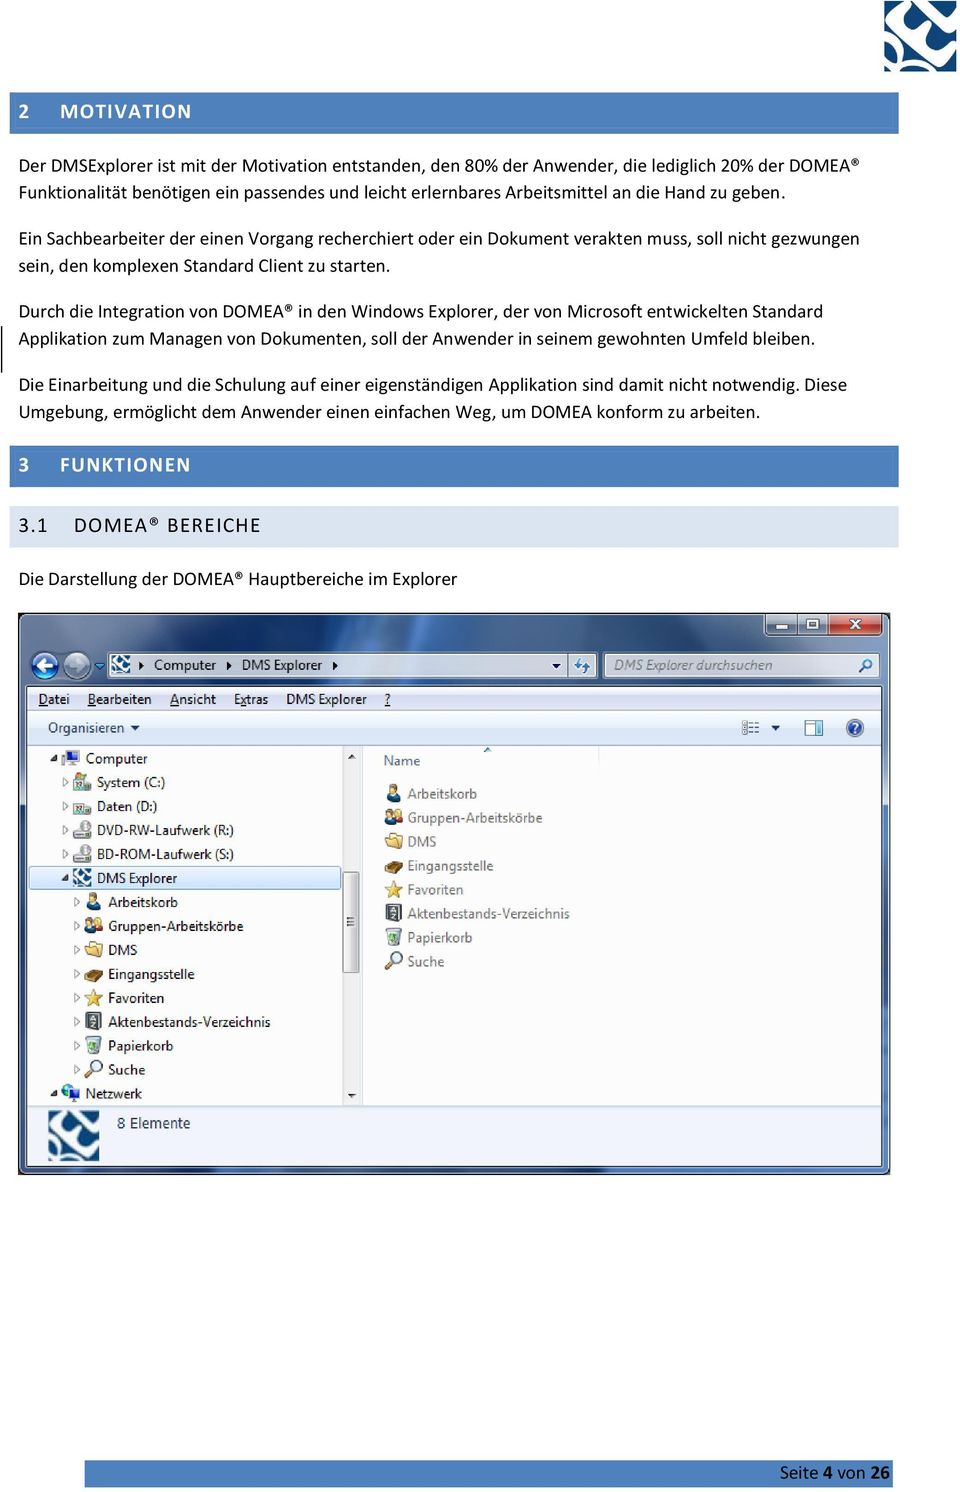 Durch die Integration von DOMEA in den Windows Explorer, der von Microsoft entwickelten Standard Applikation zum Managen von Dokumenten, soll der Anwender in seinem gewohnten Umfeld bleiben.